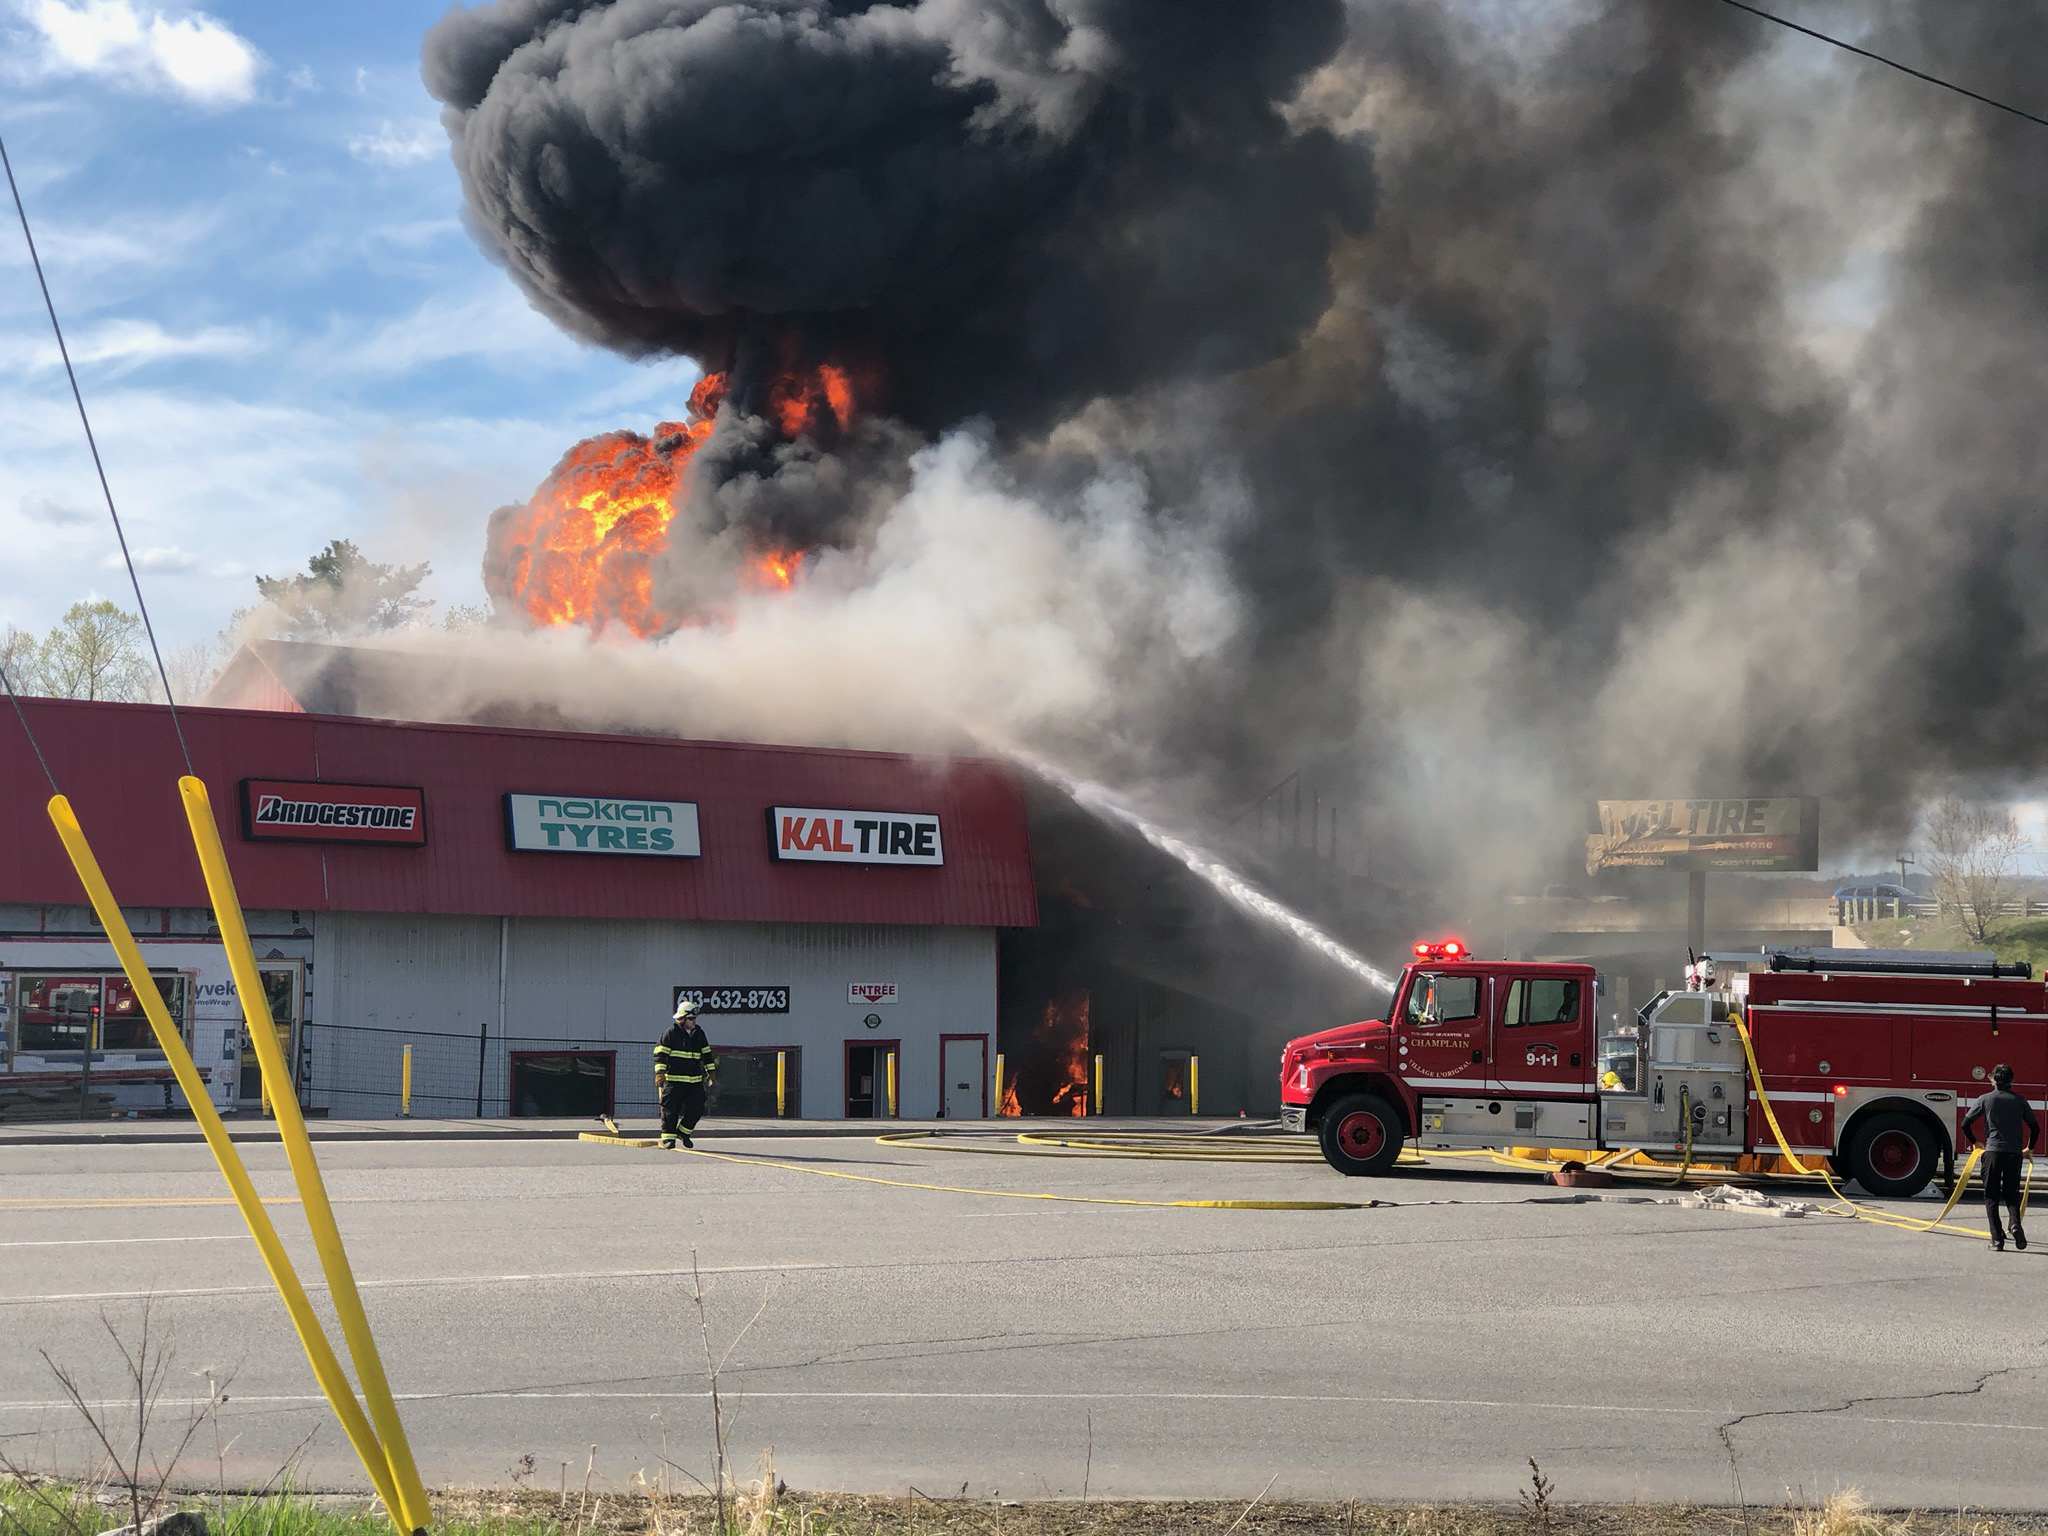 $1 million loss; Fire destroys Kal Tire